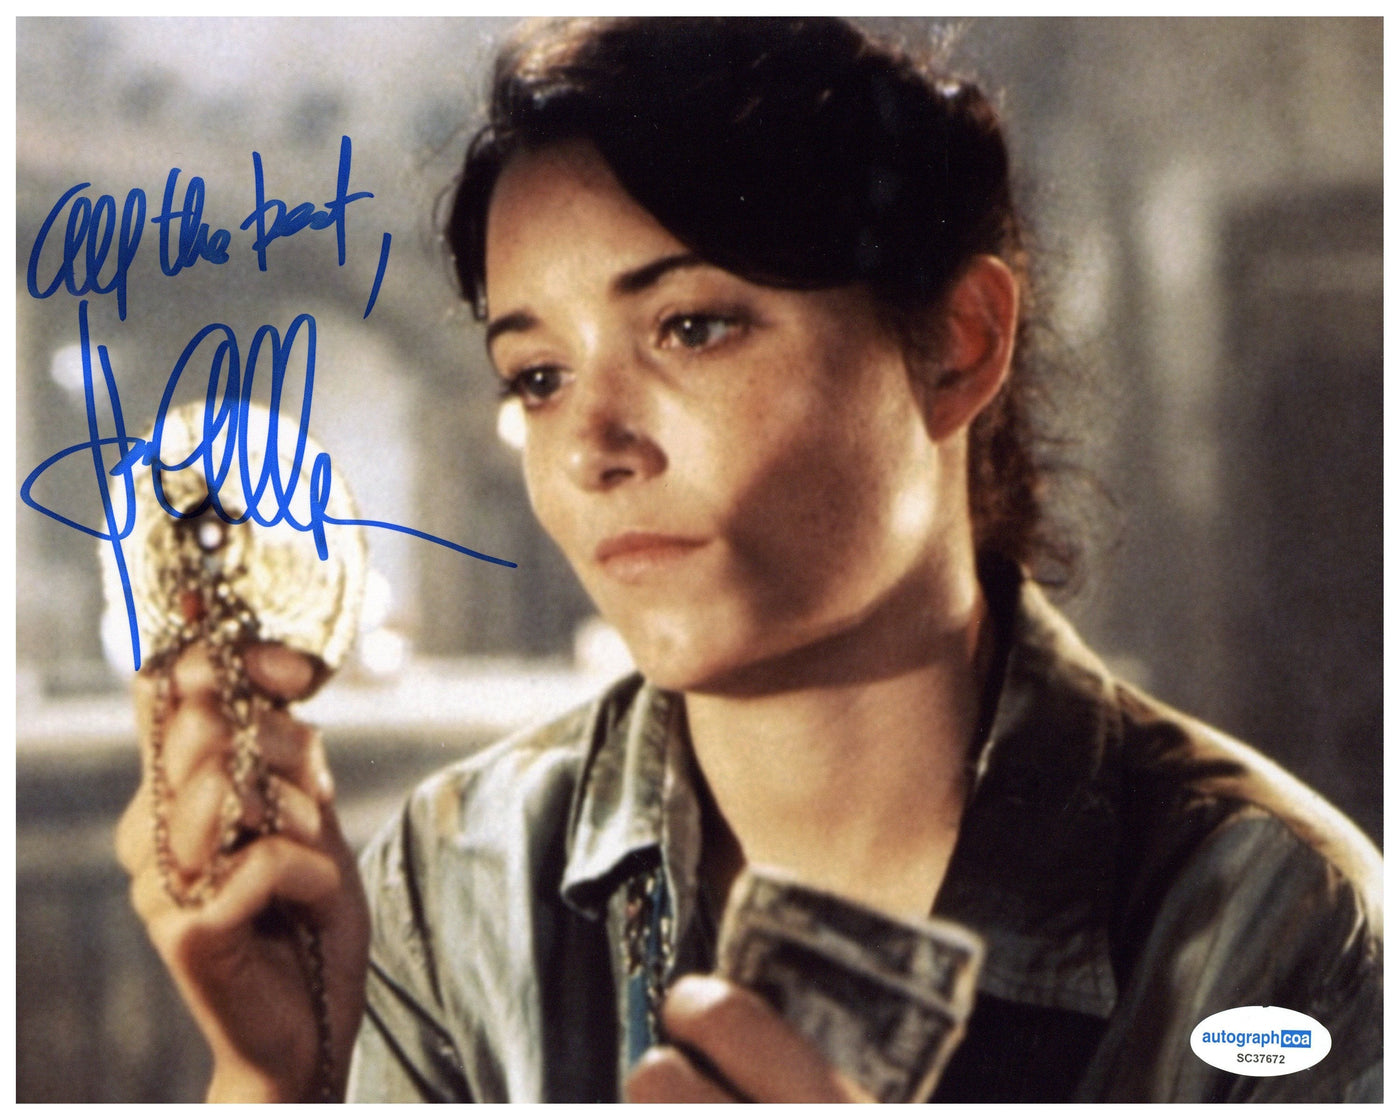 Karen Allen Signed 8x10 Photo Raiders of the Lost Arc Indiana Jones Autographed ACOA